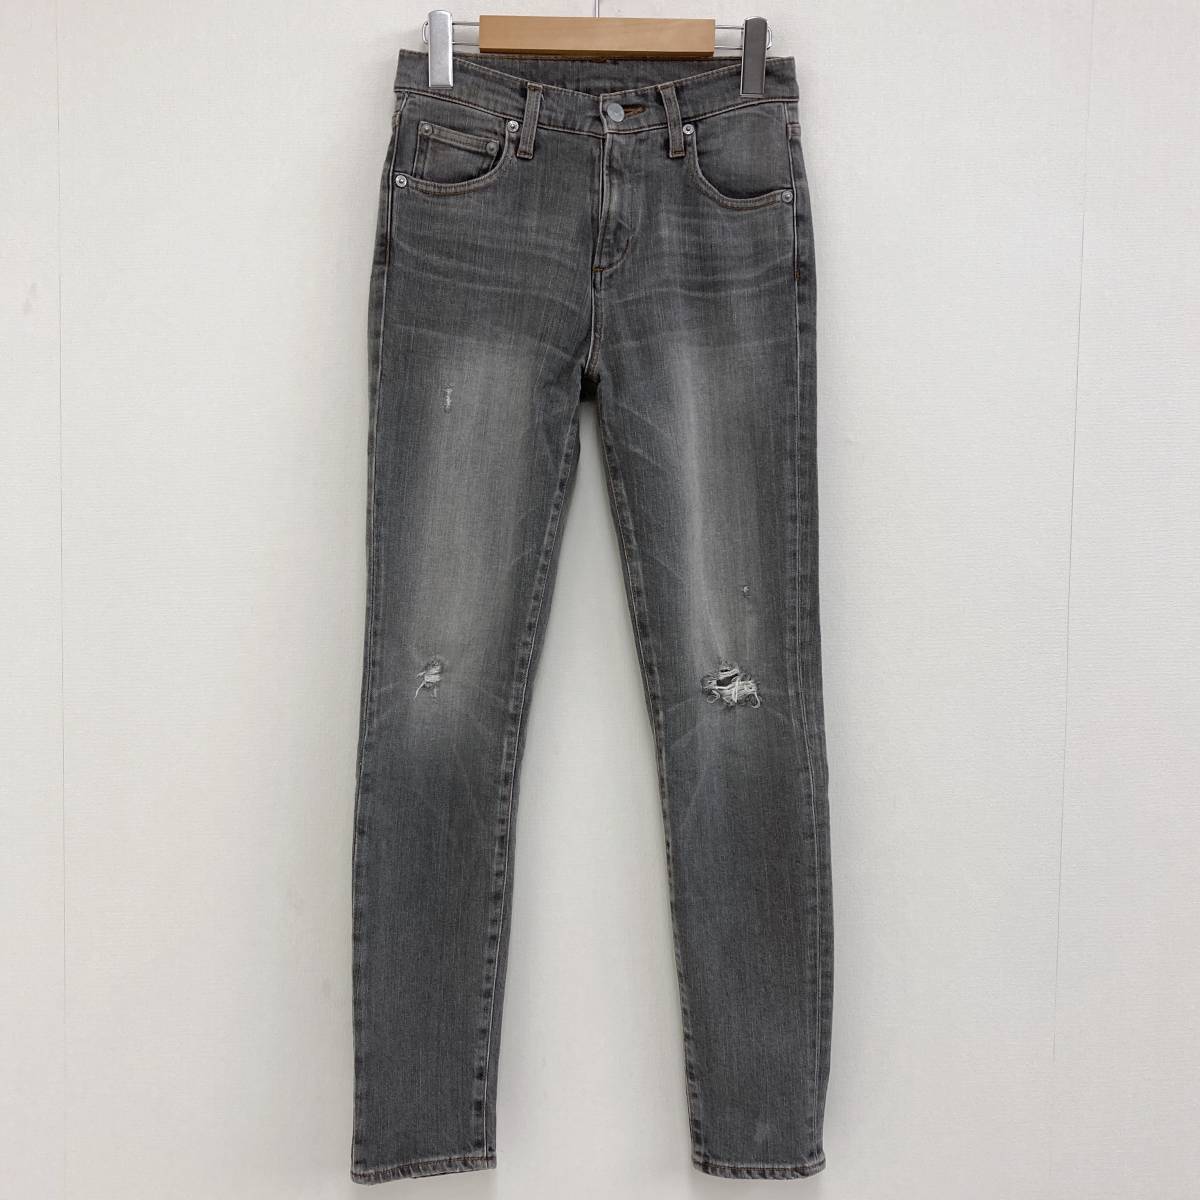 HYSTERIC GLAMOUR повреждение обработка стрейч обтягивающий джинсы серый женский S размер Hysteric Glamour Denim брюки 3030237